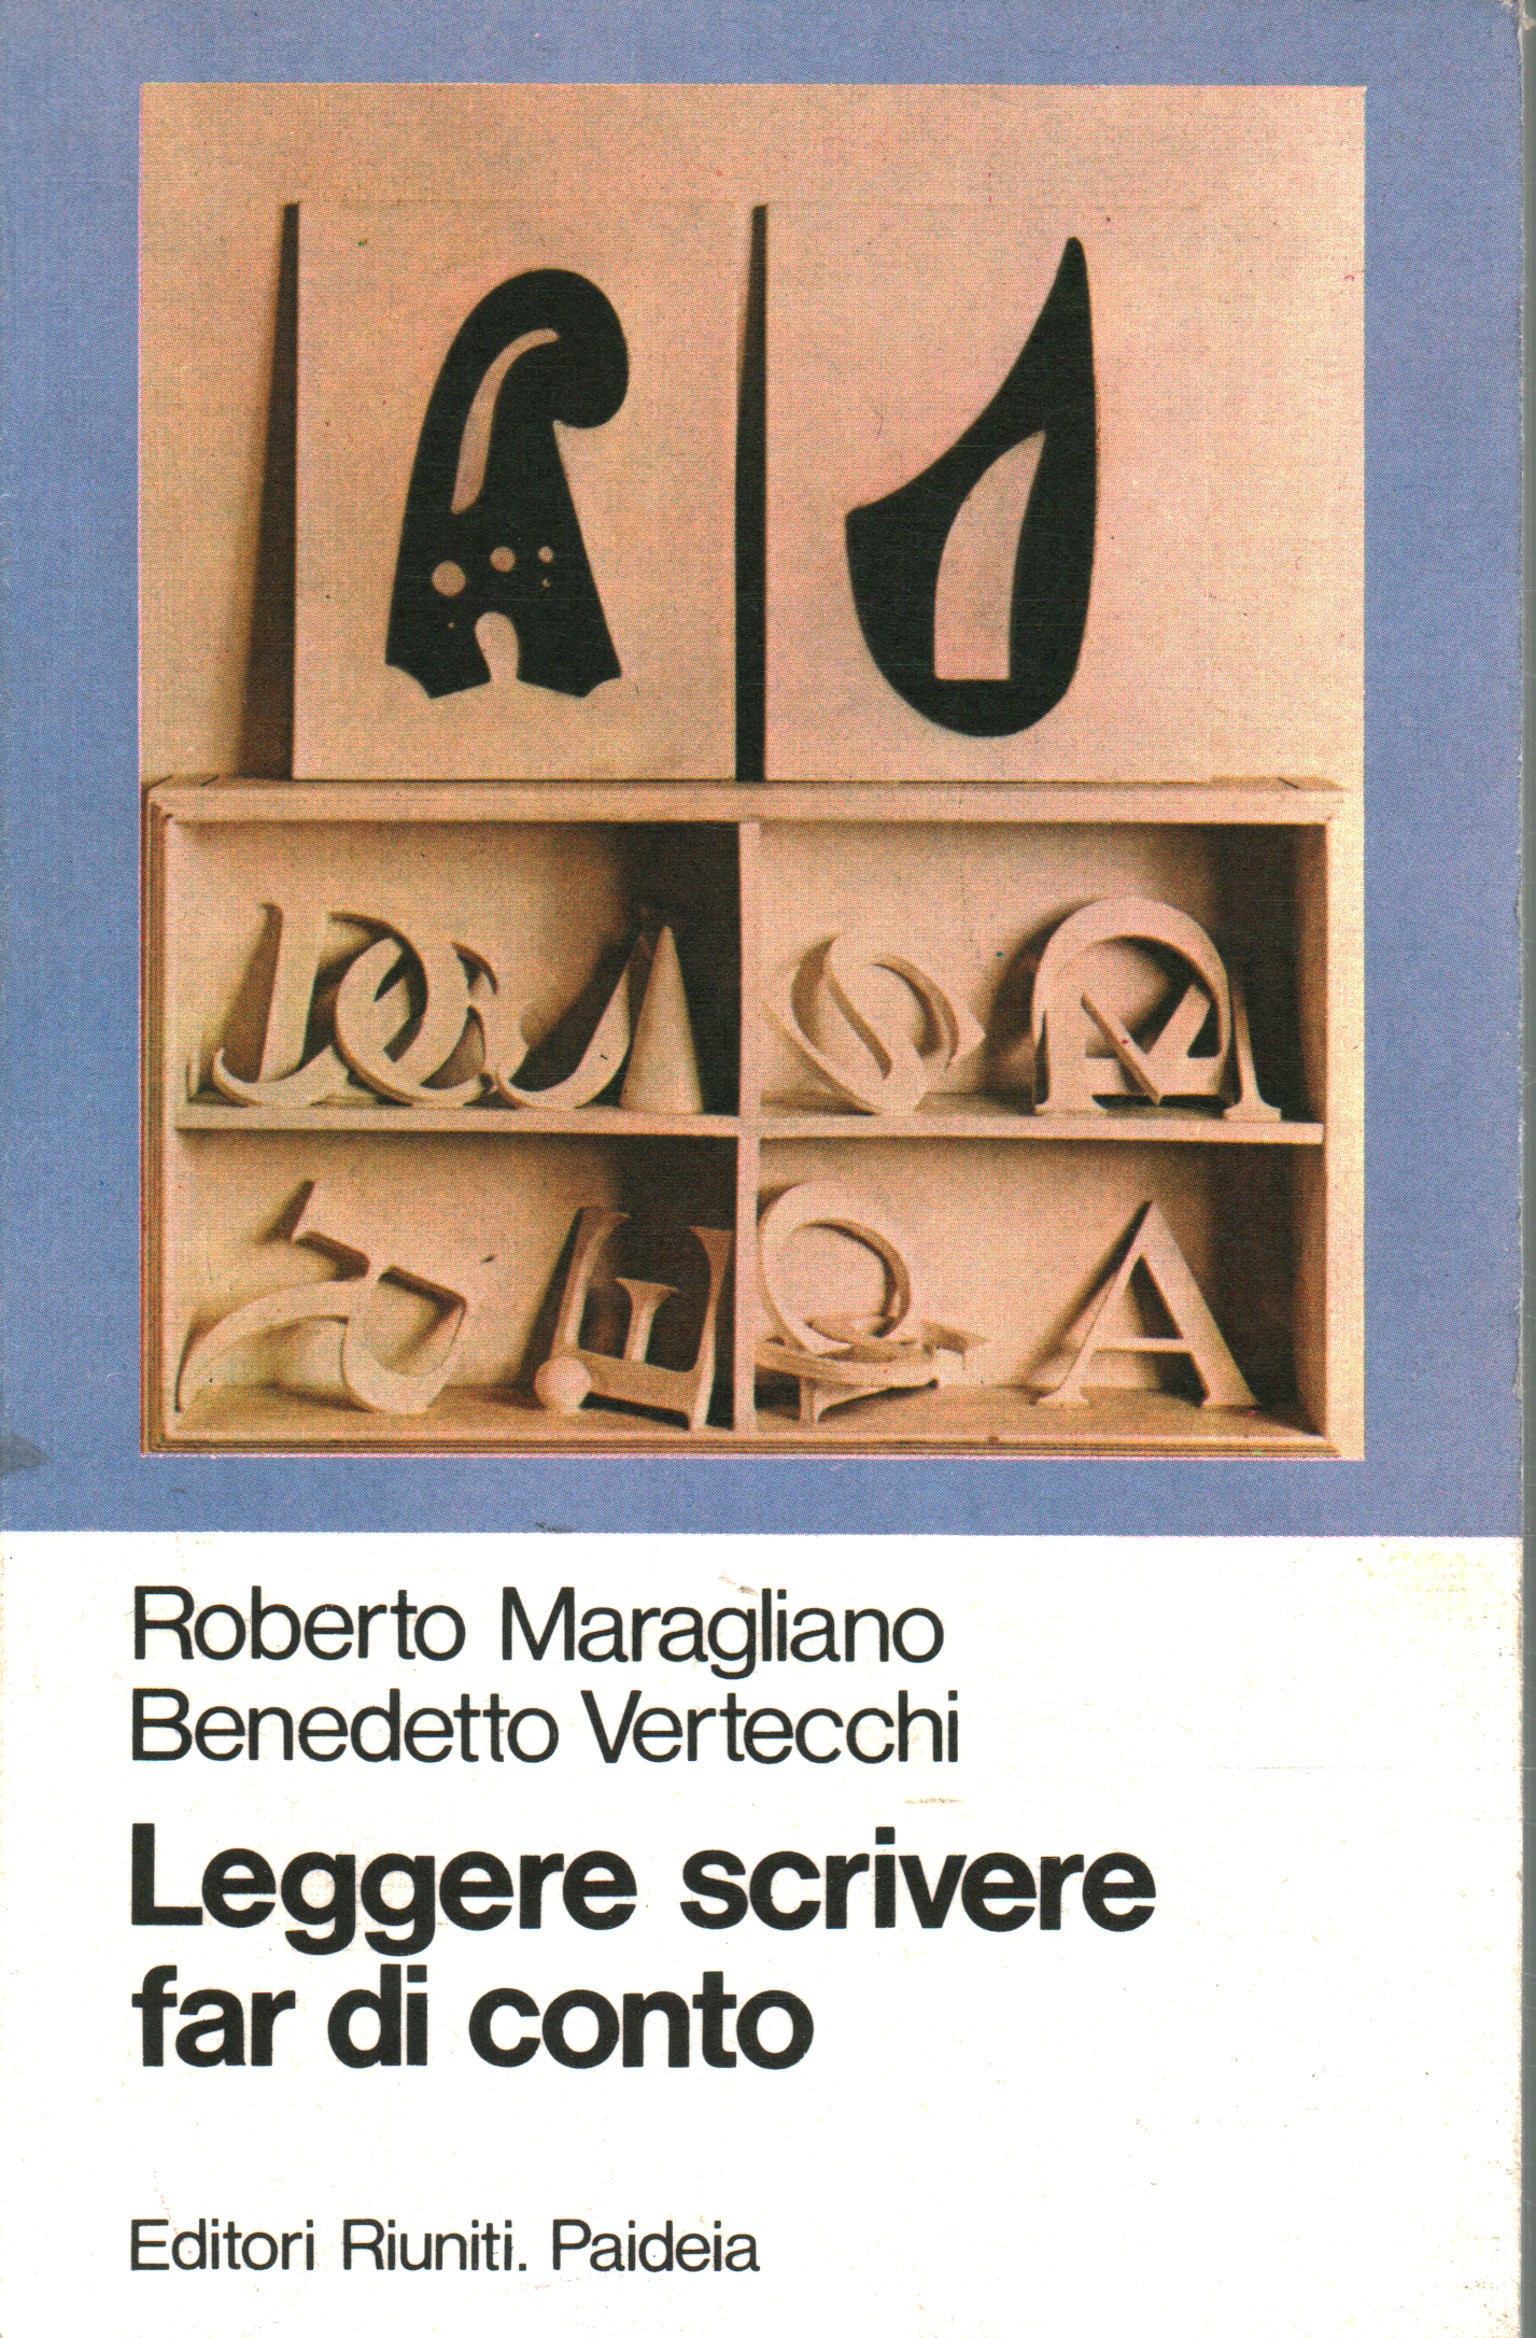 Lecture, écriture, calcul, Roberto Maragliano Benedetto Vertecchi